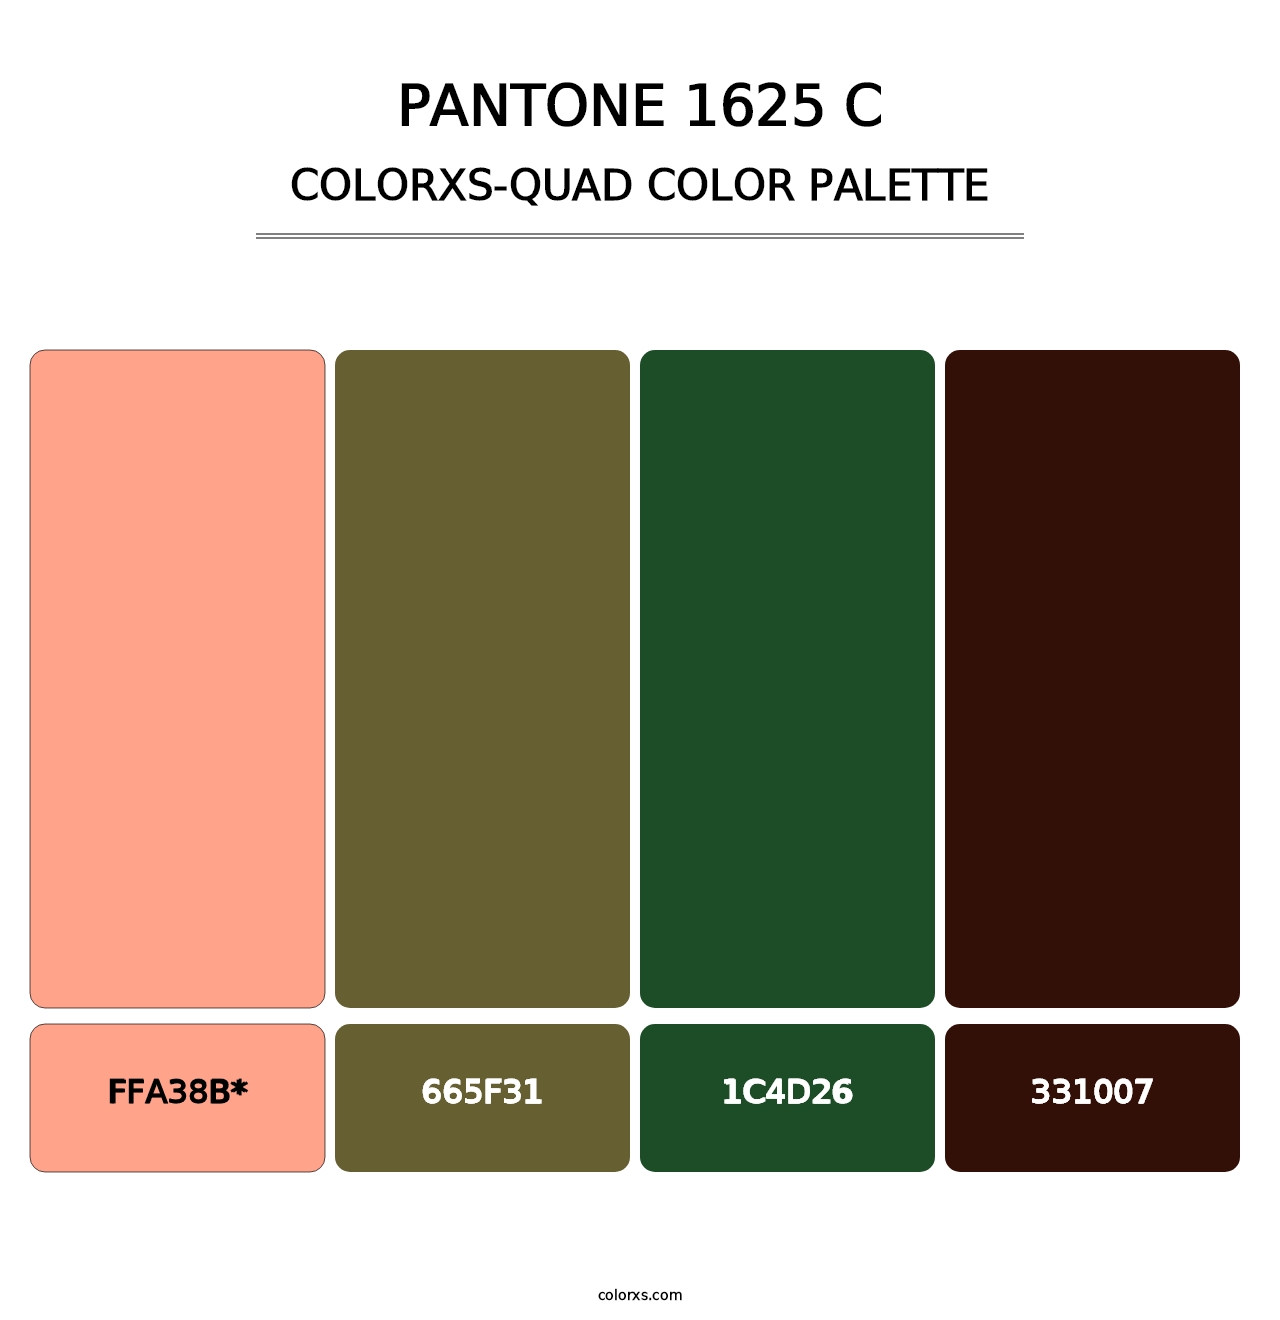 PANTONE 1625 C - Colorxs Quad Palette